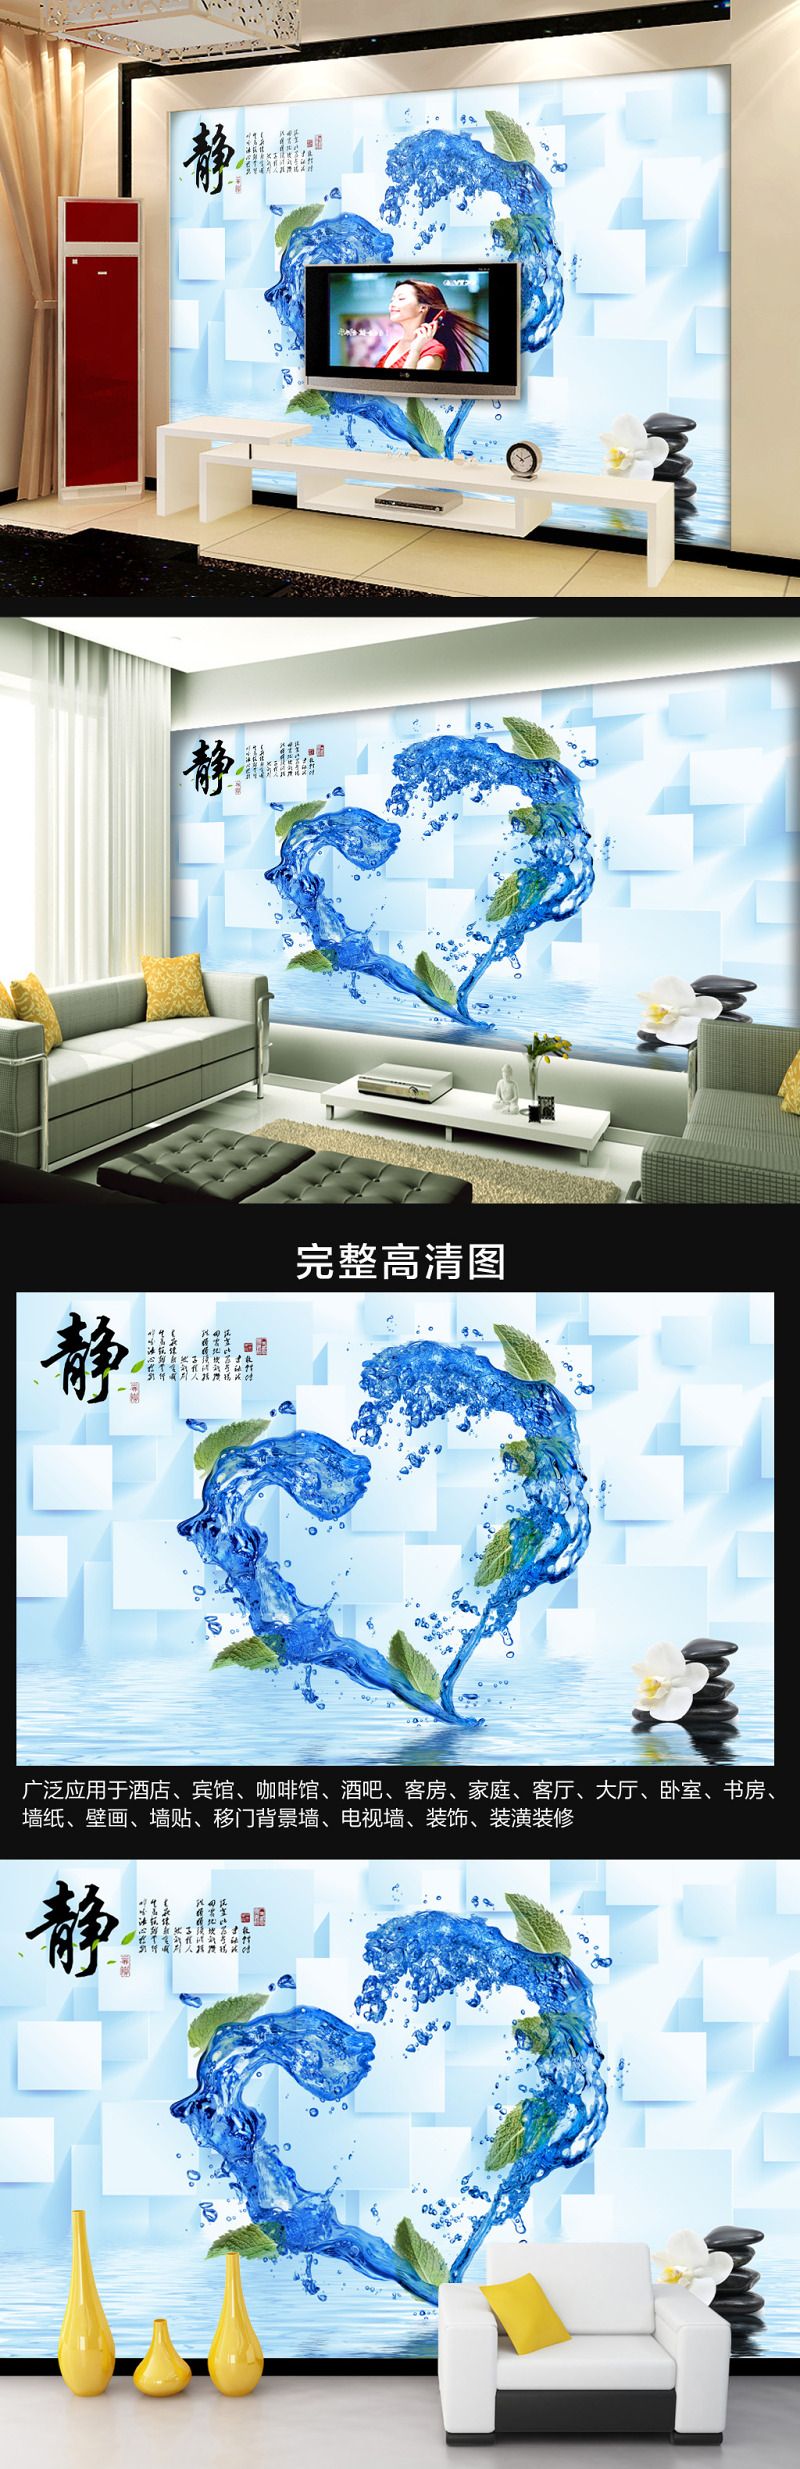 3D立体动感抽象水纹静字电视背景墙